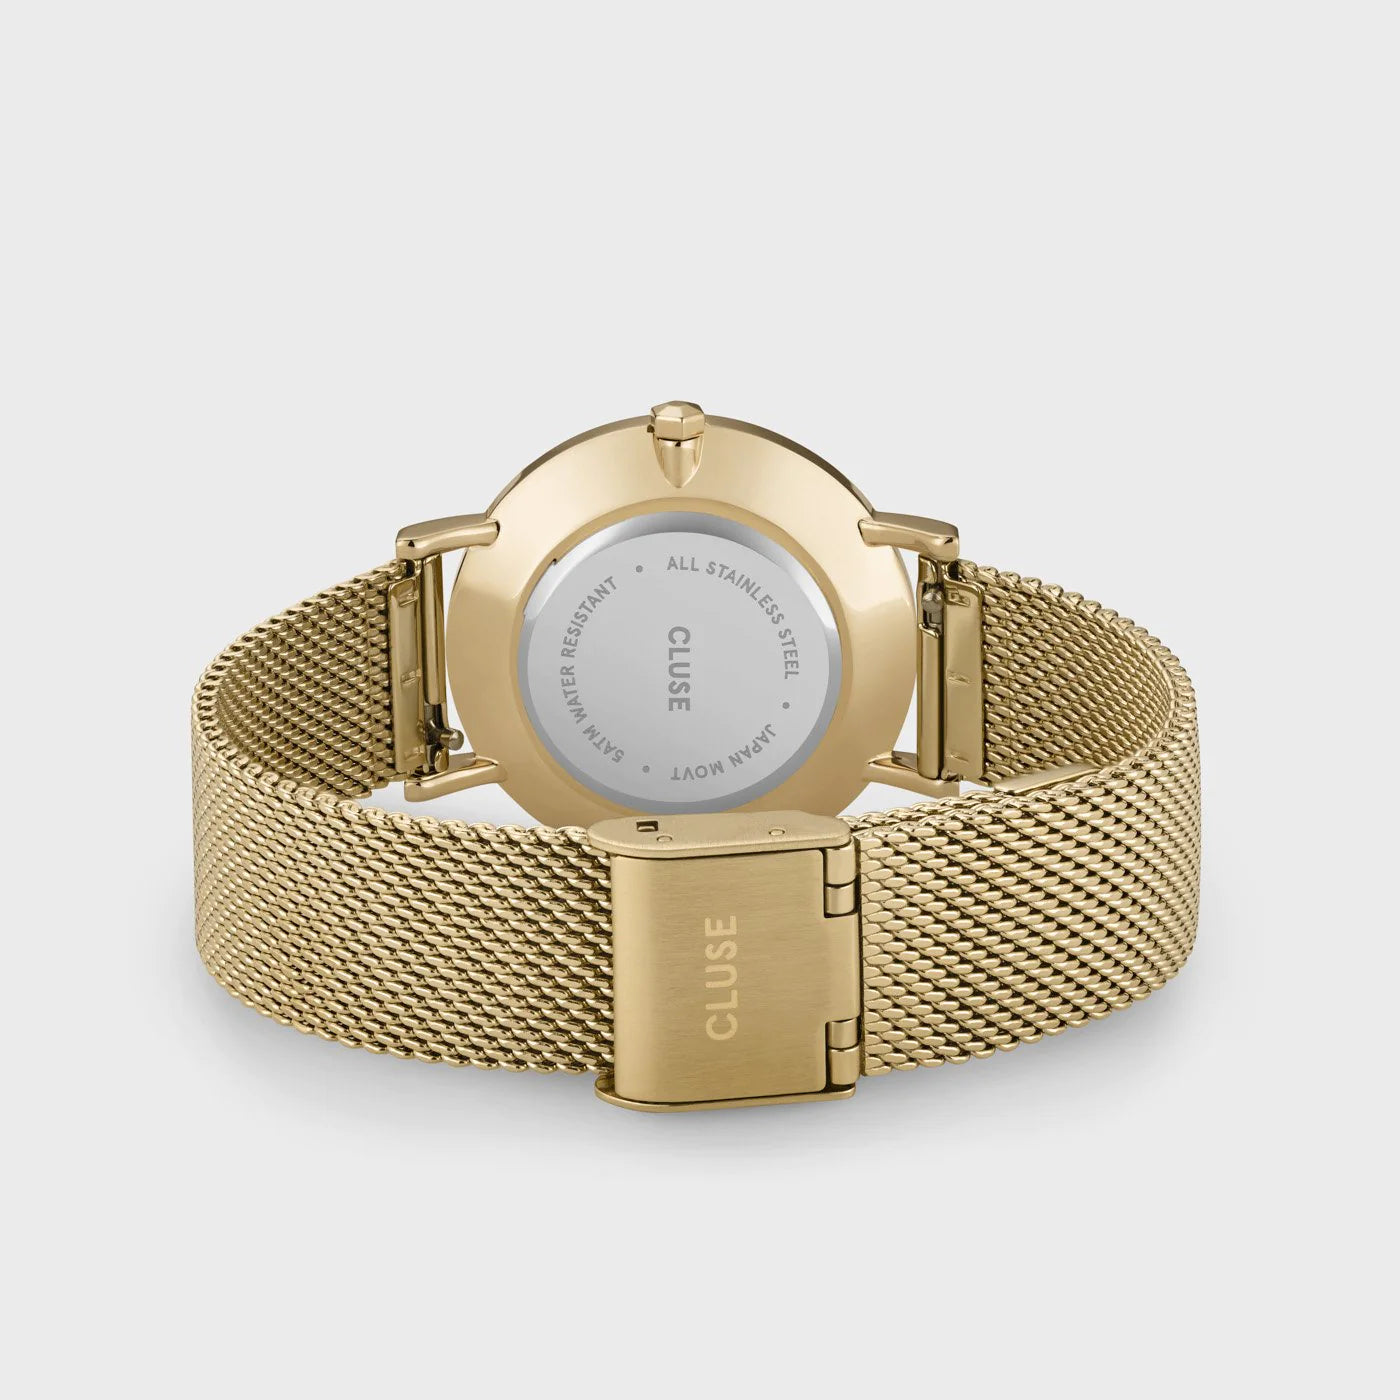 Gehäuseboden und Armband aus Mesh-Edelstahl der Cluse Stahl-Uhr "Minuit Mesh" mit goldfarbenem Gehäuse und weißem Zifferblatt